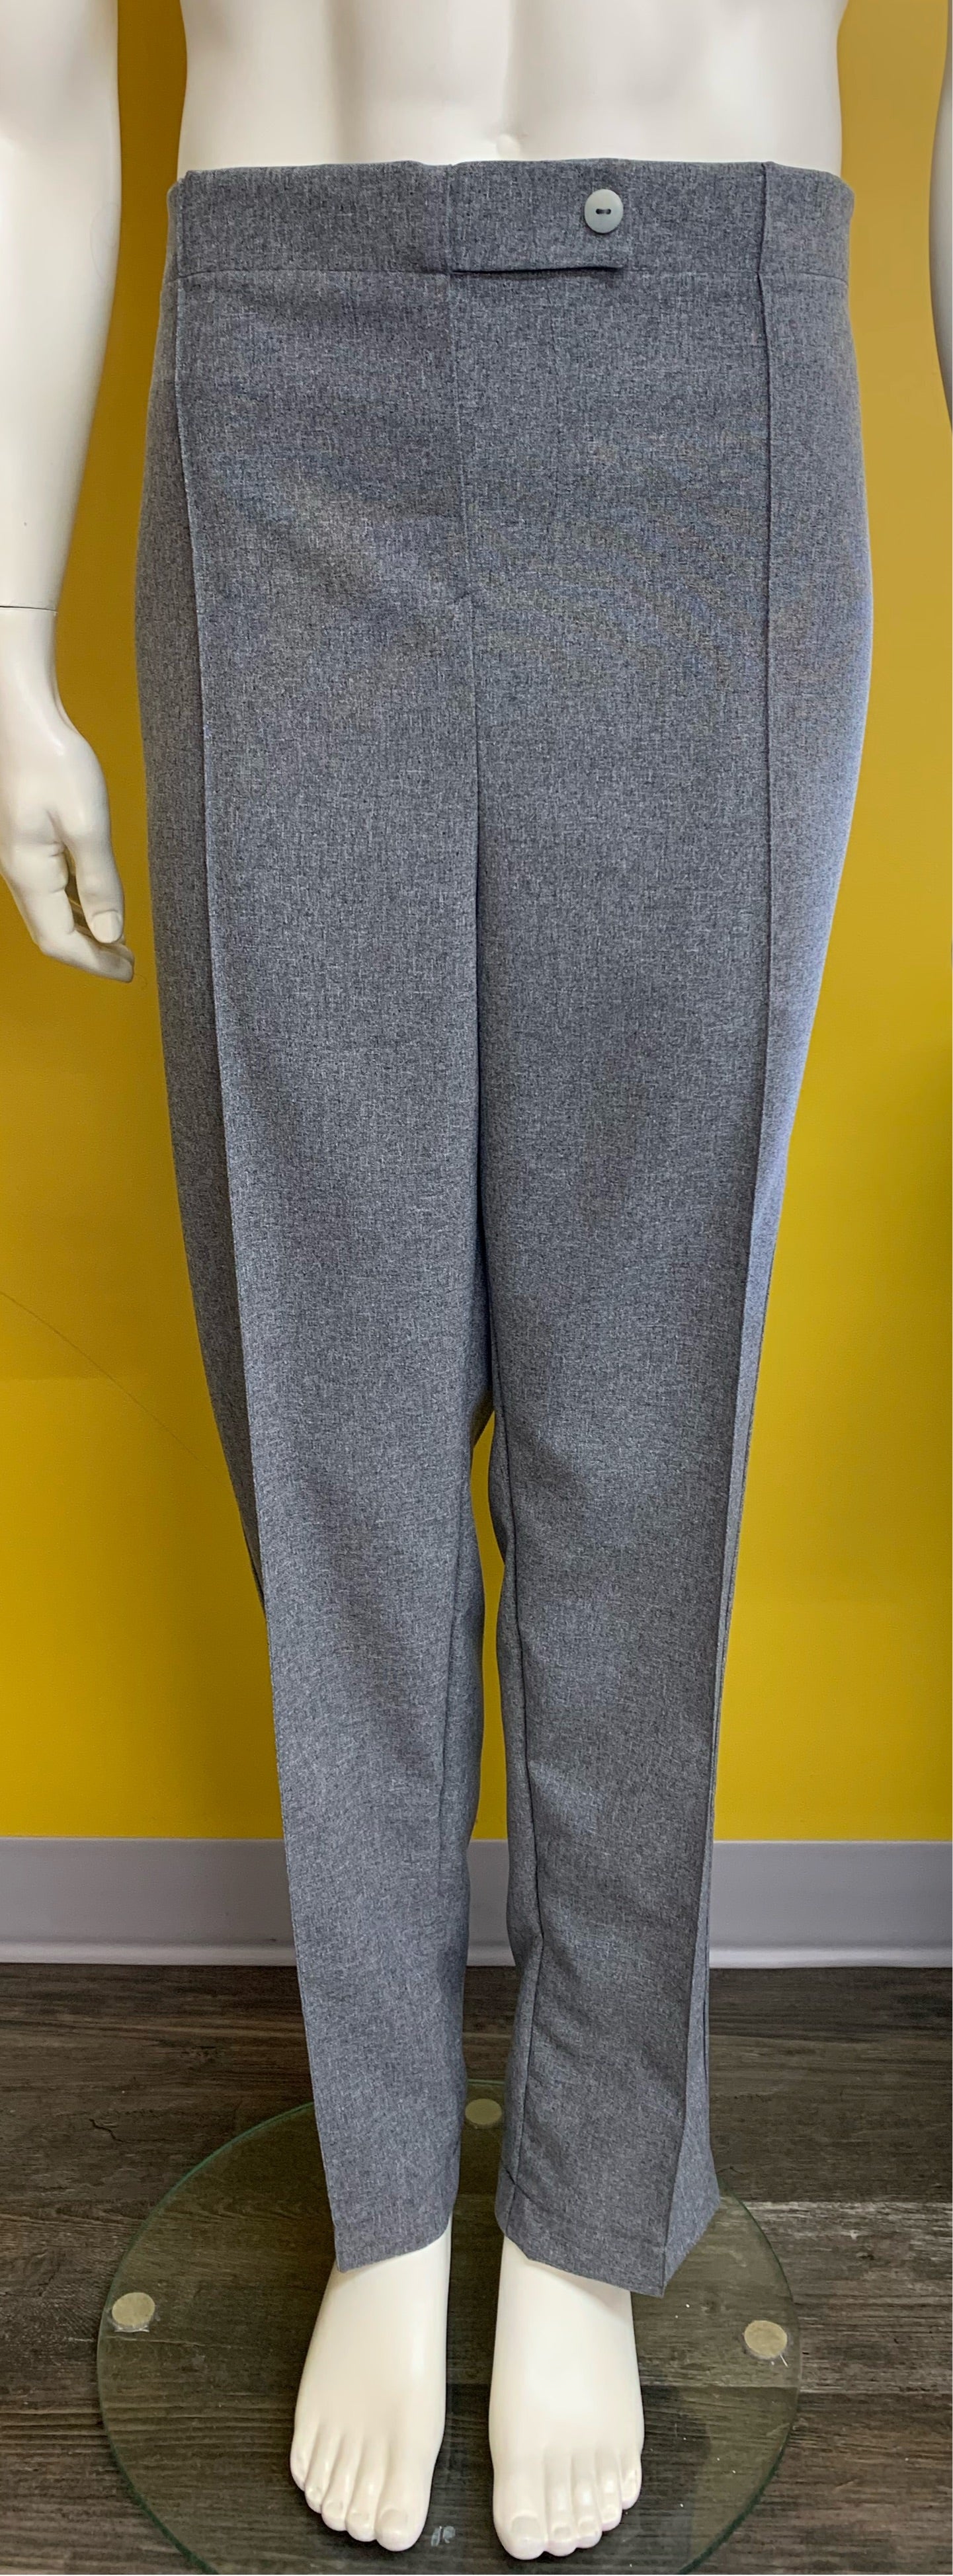 Pantalon gris chiné sans fond | Pierre | Mode Québécoise  | A3B